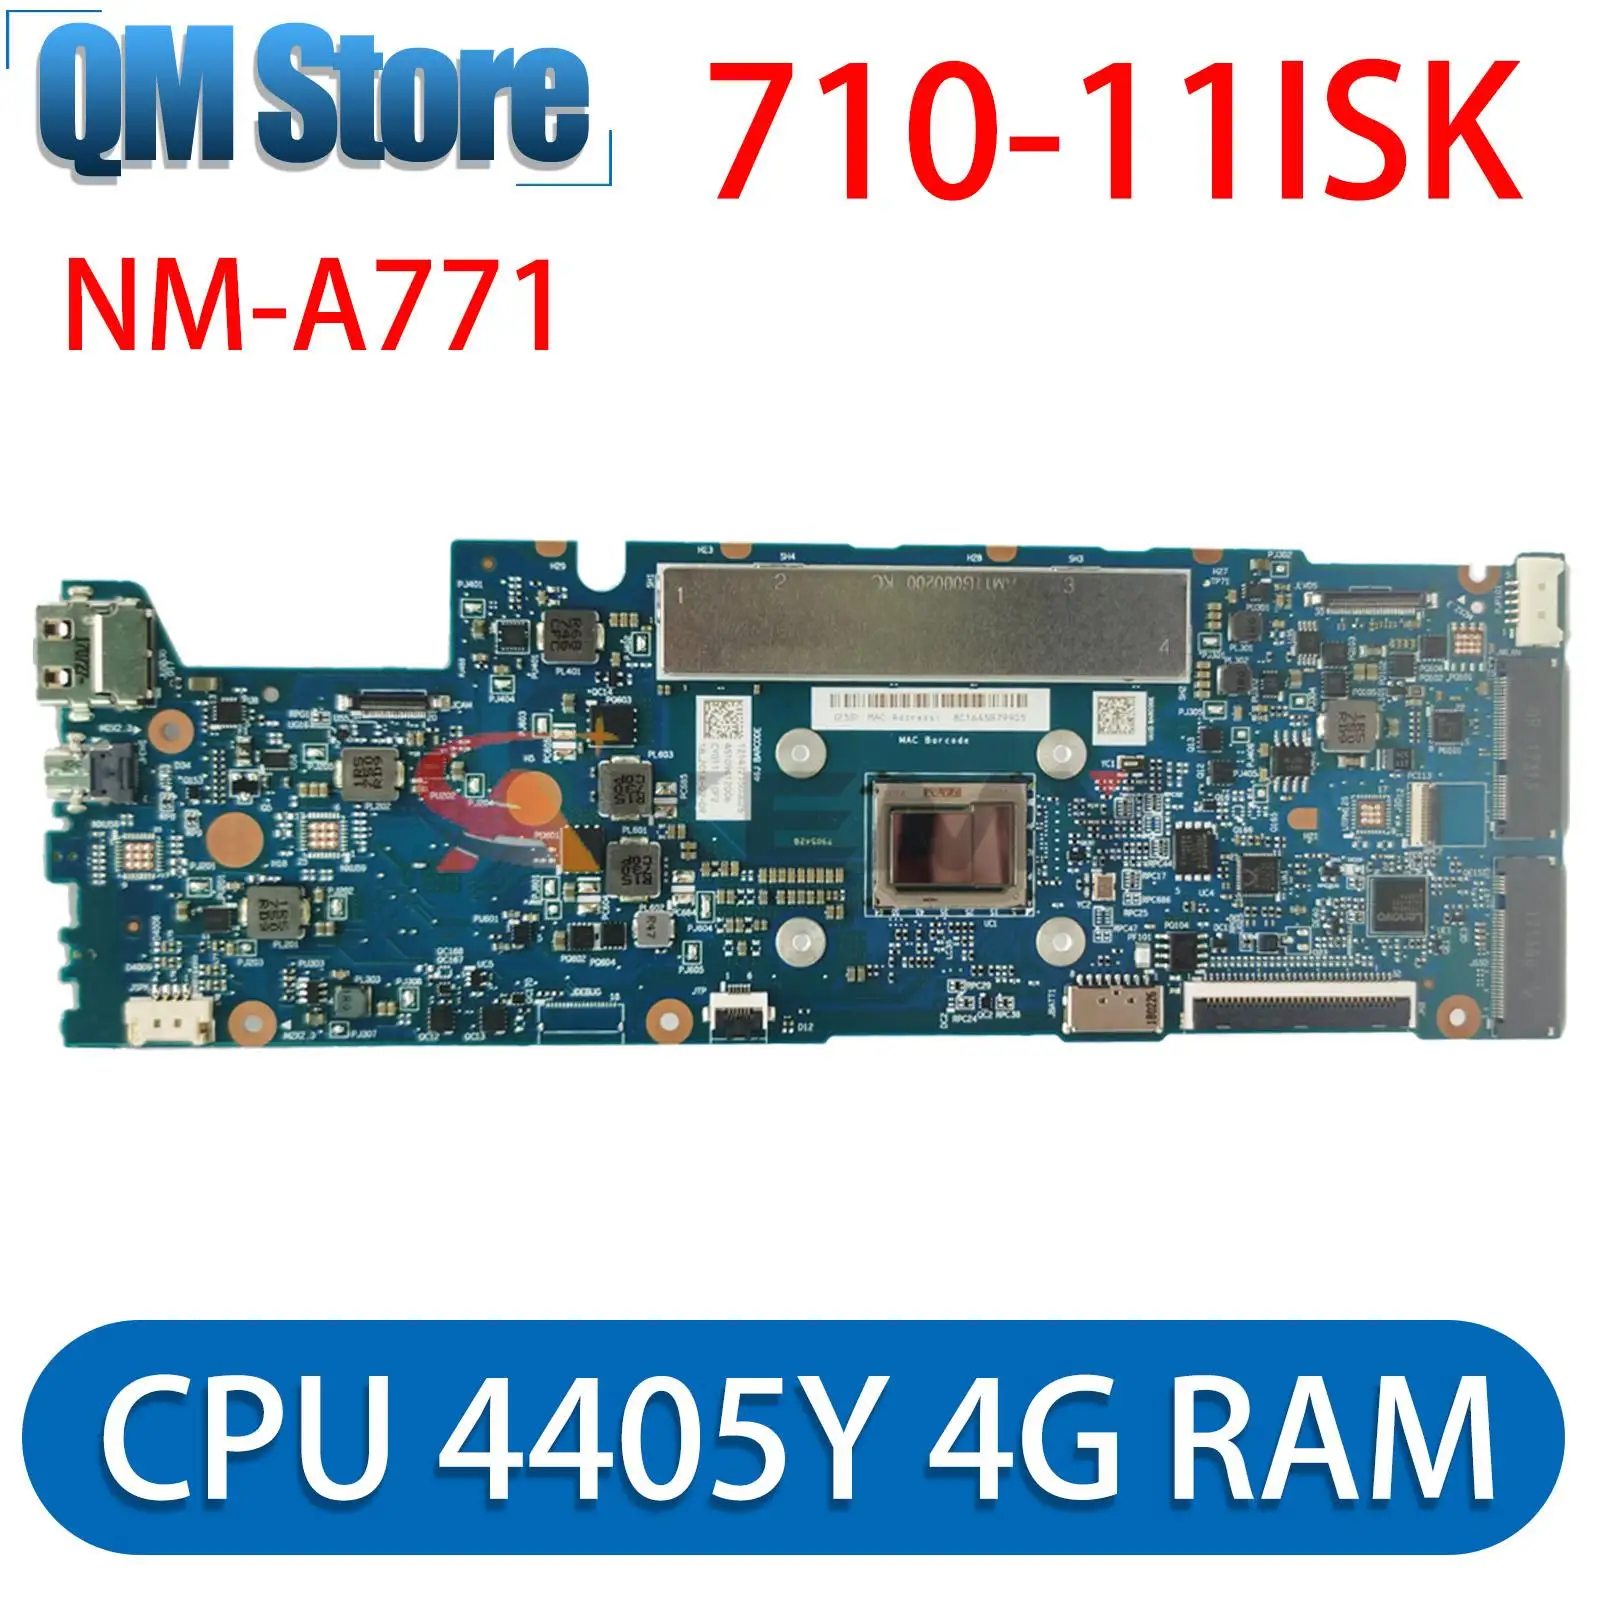 Материнская плата для ноутбука Lenovo Yoga 710-11ISK 80TX ideapad 11,6 дюйма FRU 5B20L46167 CYG11 NM-A771 с процессором 4405Y 4G RAM la h081p для lenovo ideapad s540 14iwl c340 14iwl flex 14iwl материнская плата для ноутбука с процессором i5 i7 8th ram 4g gpu mx230 или uma